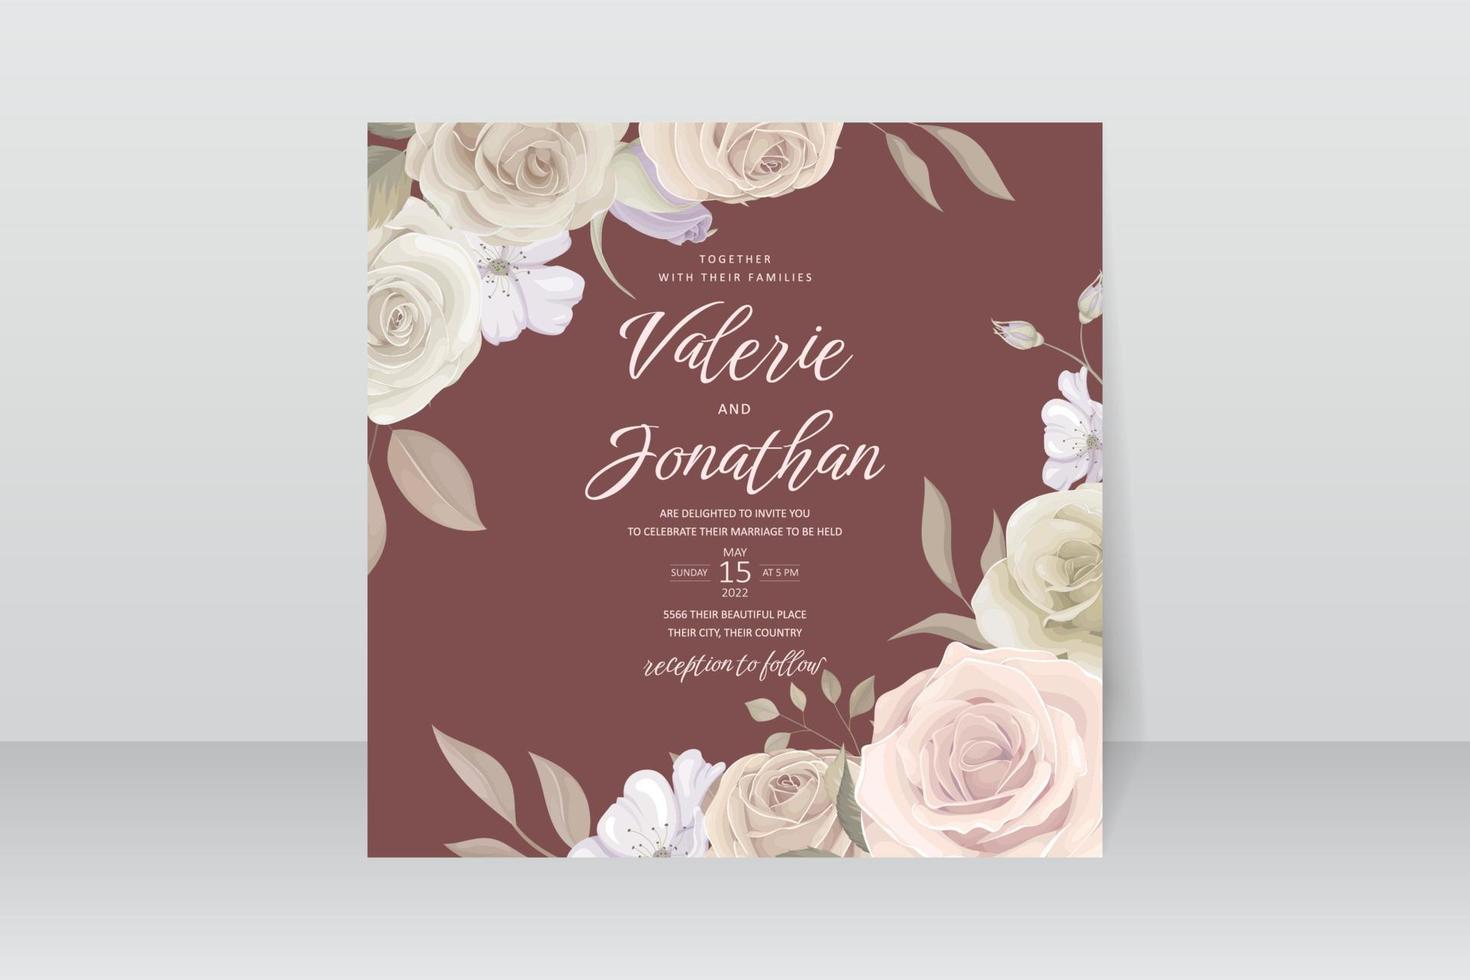 modelo de convite de casamento com decoração floral e de folhas vetor